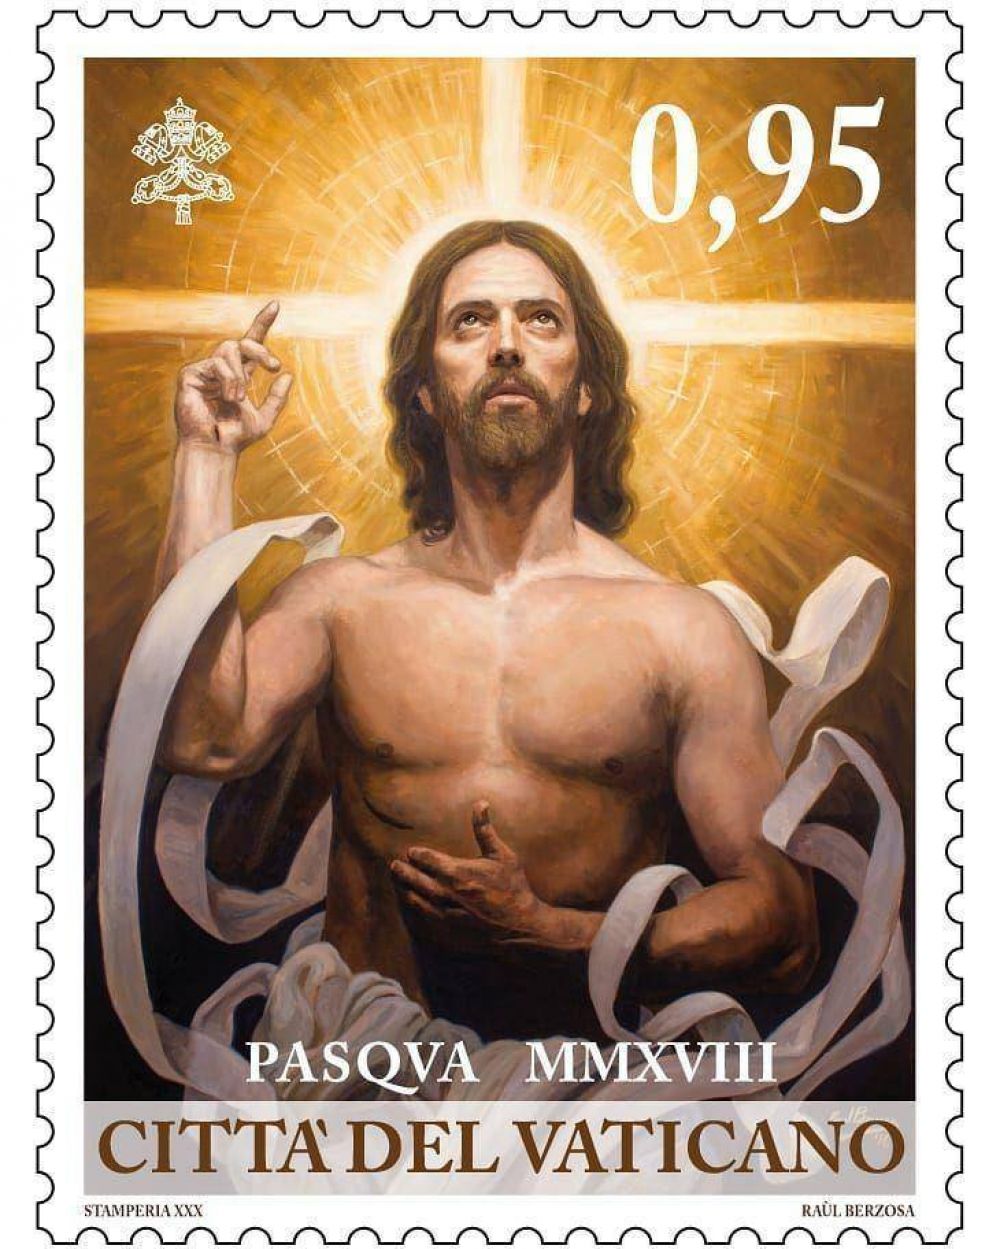 Este es el sello postal del Vaticano para la Pascua 2018